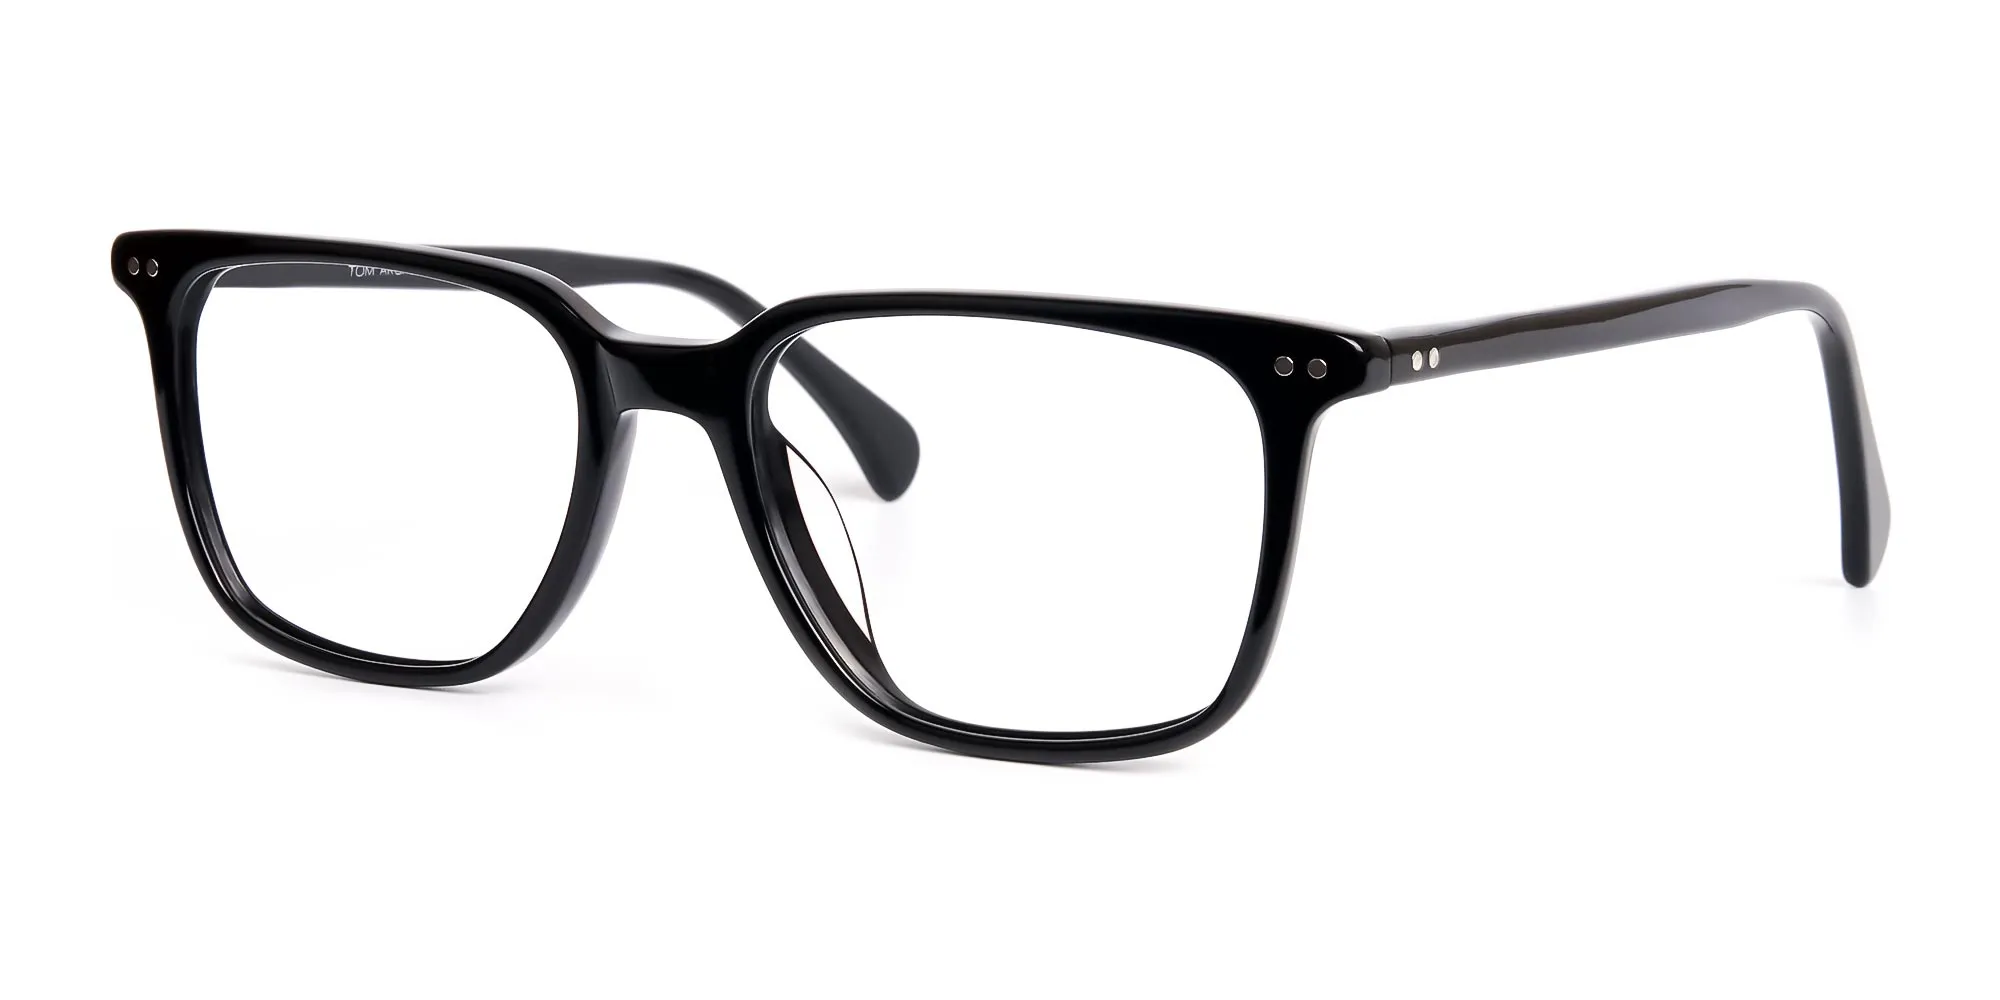 black rectangular full rim glasses frames